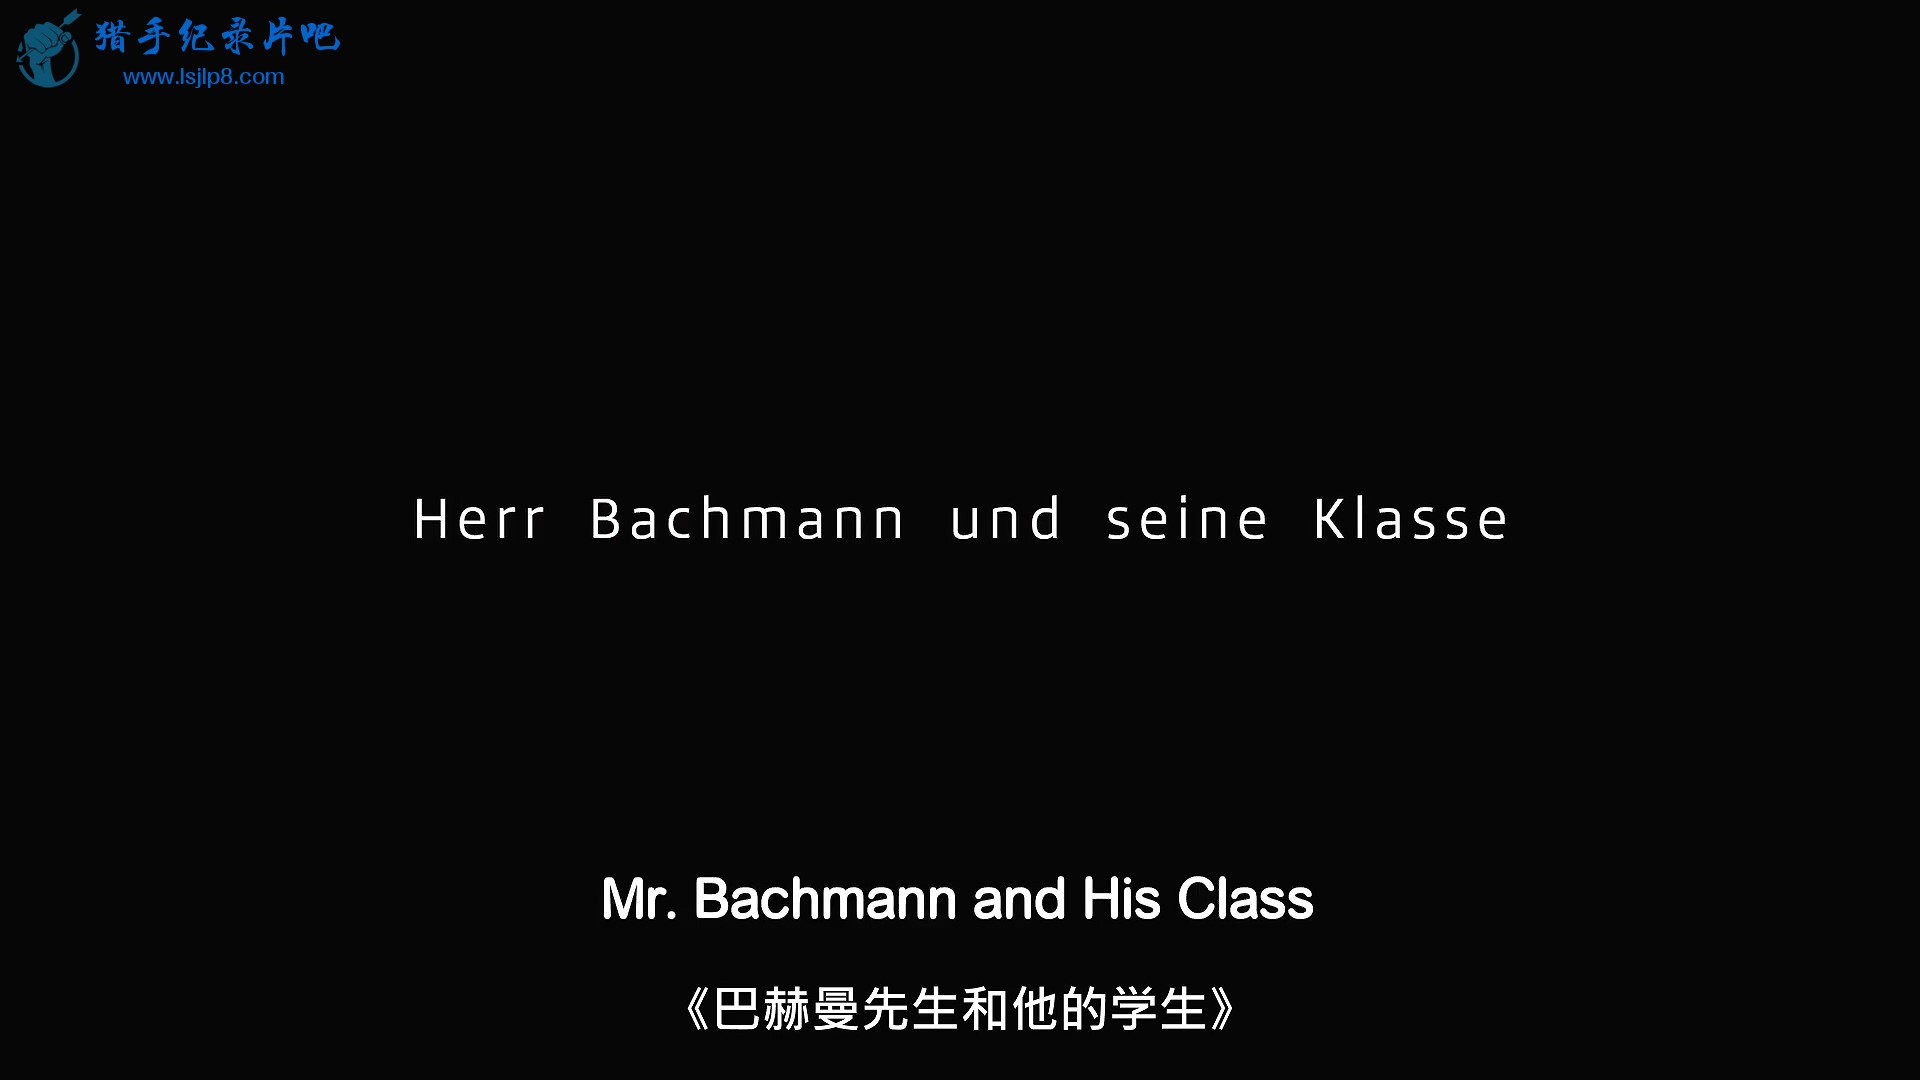 巴赫曼先生和他的学生 Herr Bachmann und seine Klasse.mp4_20210630_184212.372.jpg